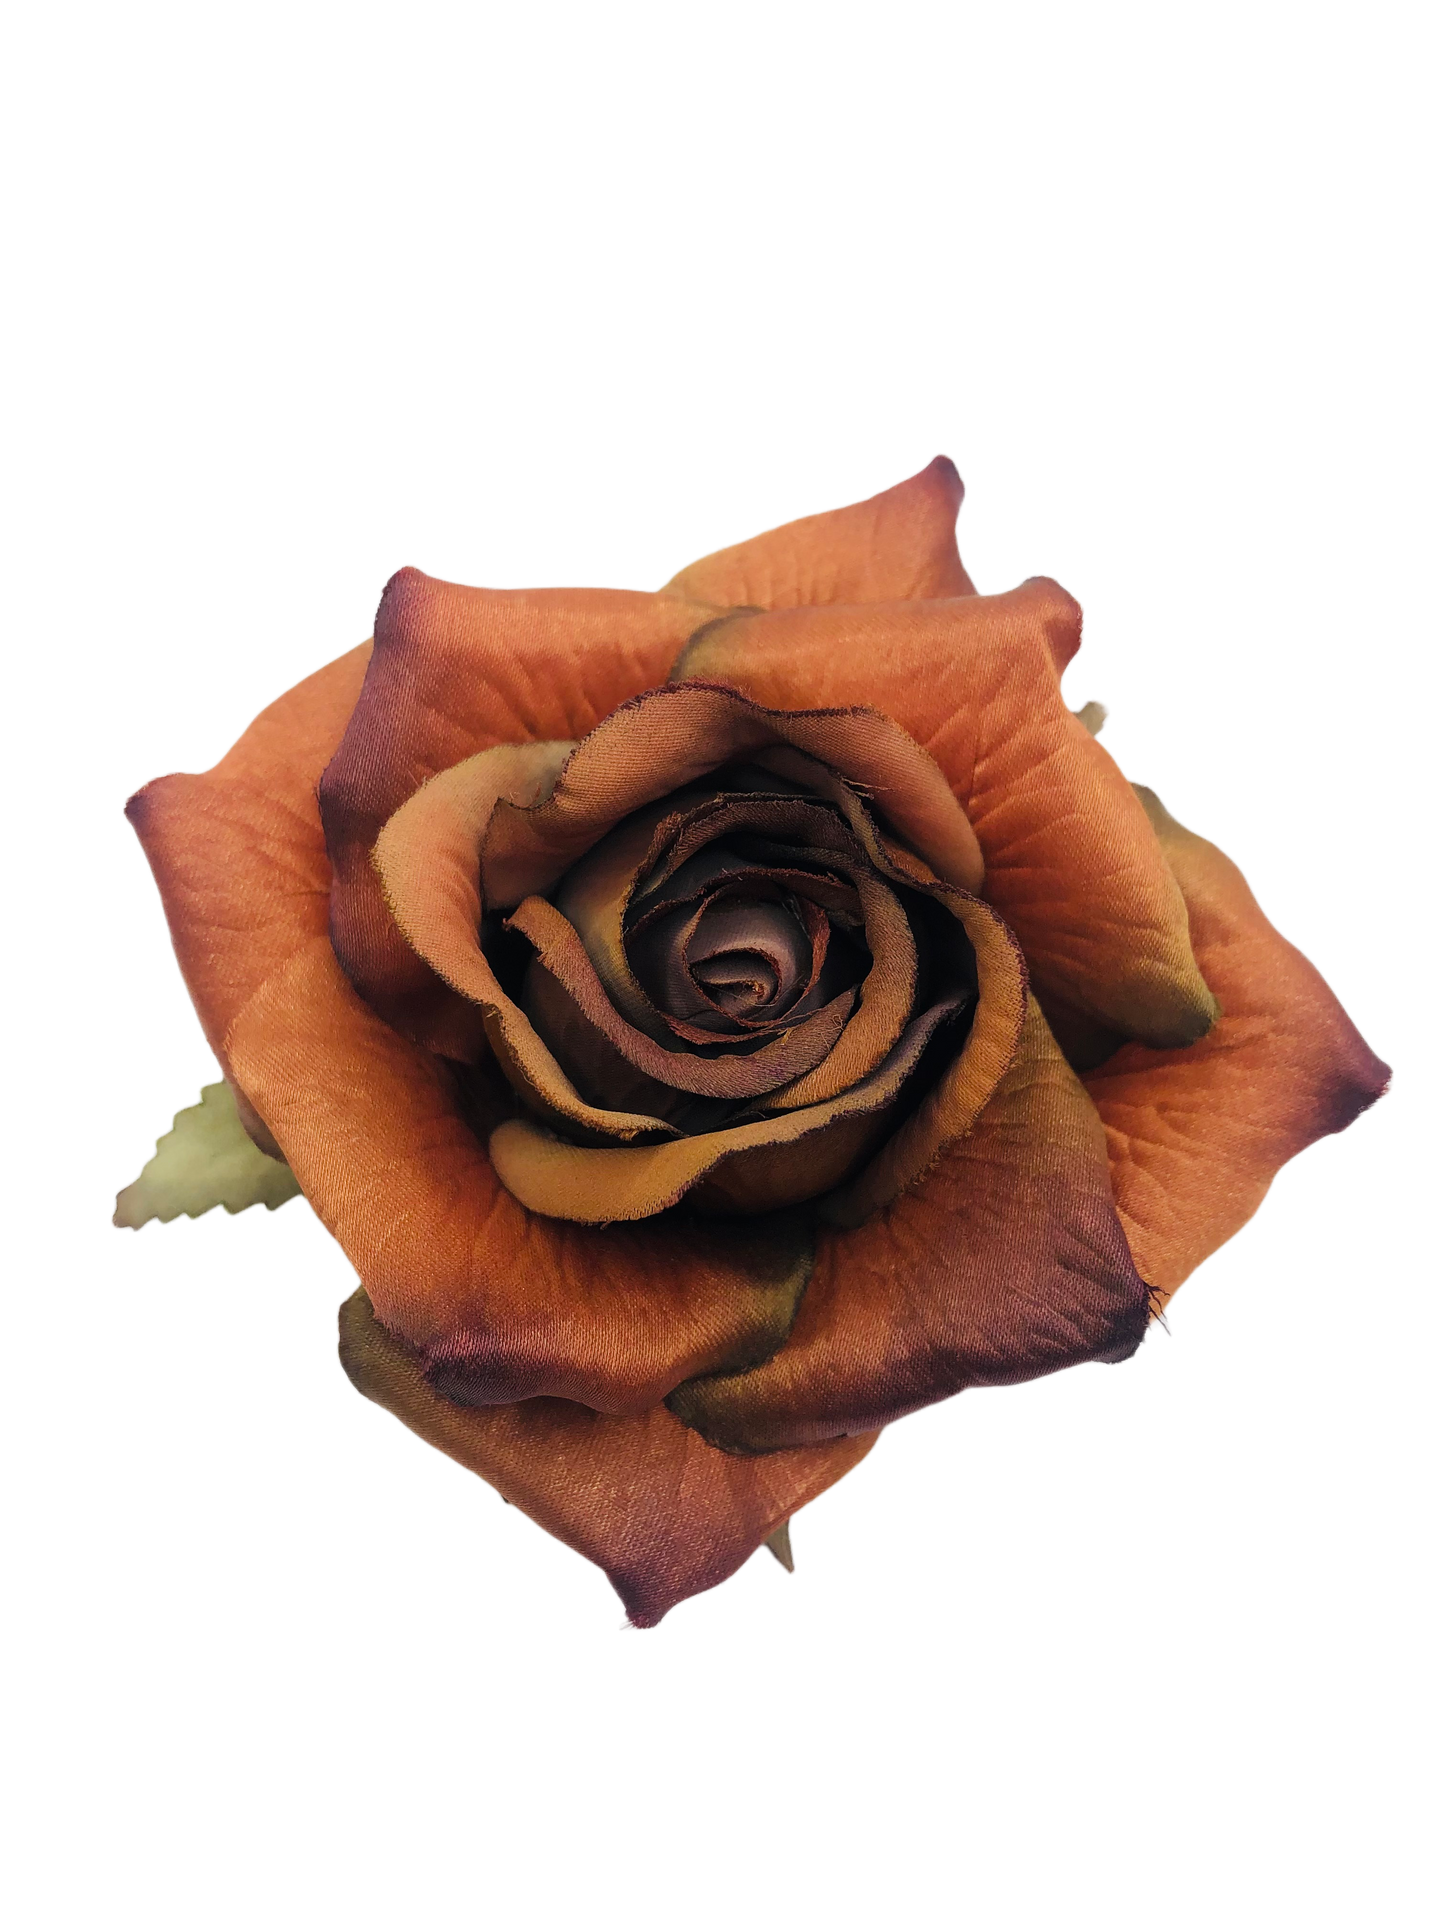 Karin's Garden Rose métallisée bronze 4"